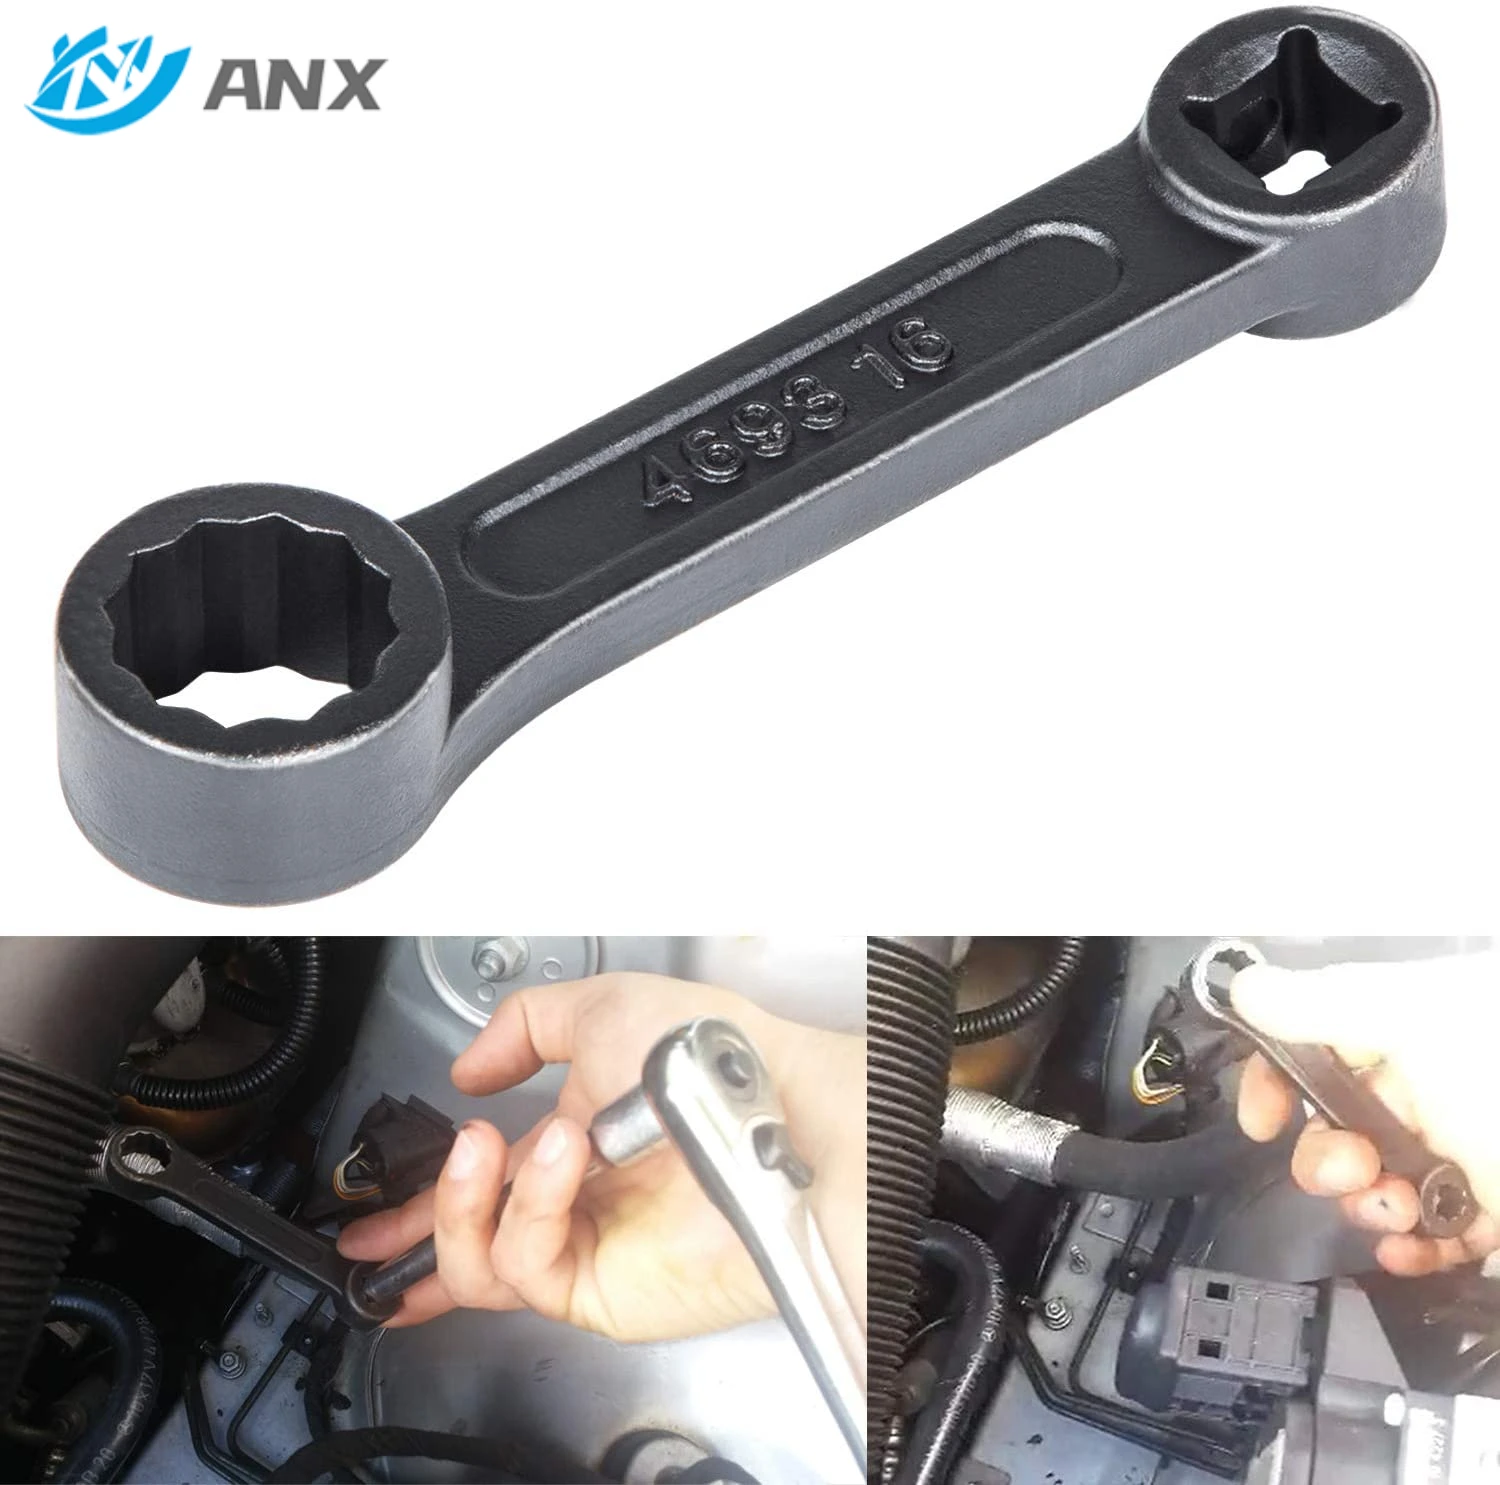 ANX Offset 16mm 4693 Engine Mount Socket Wrench for Mercedes Benz W220/ W210/W203/W221/W211/W204